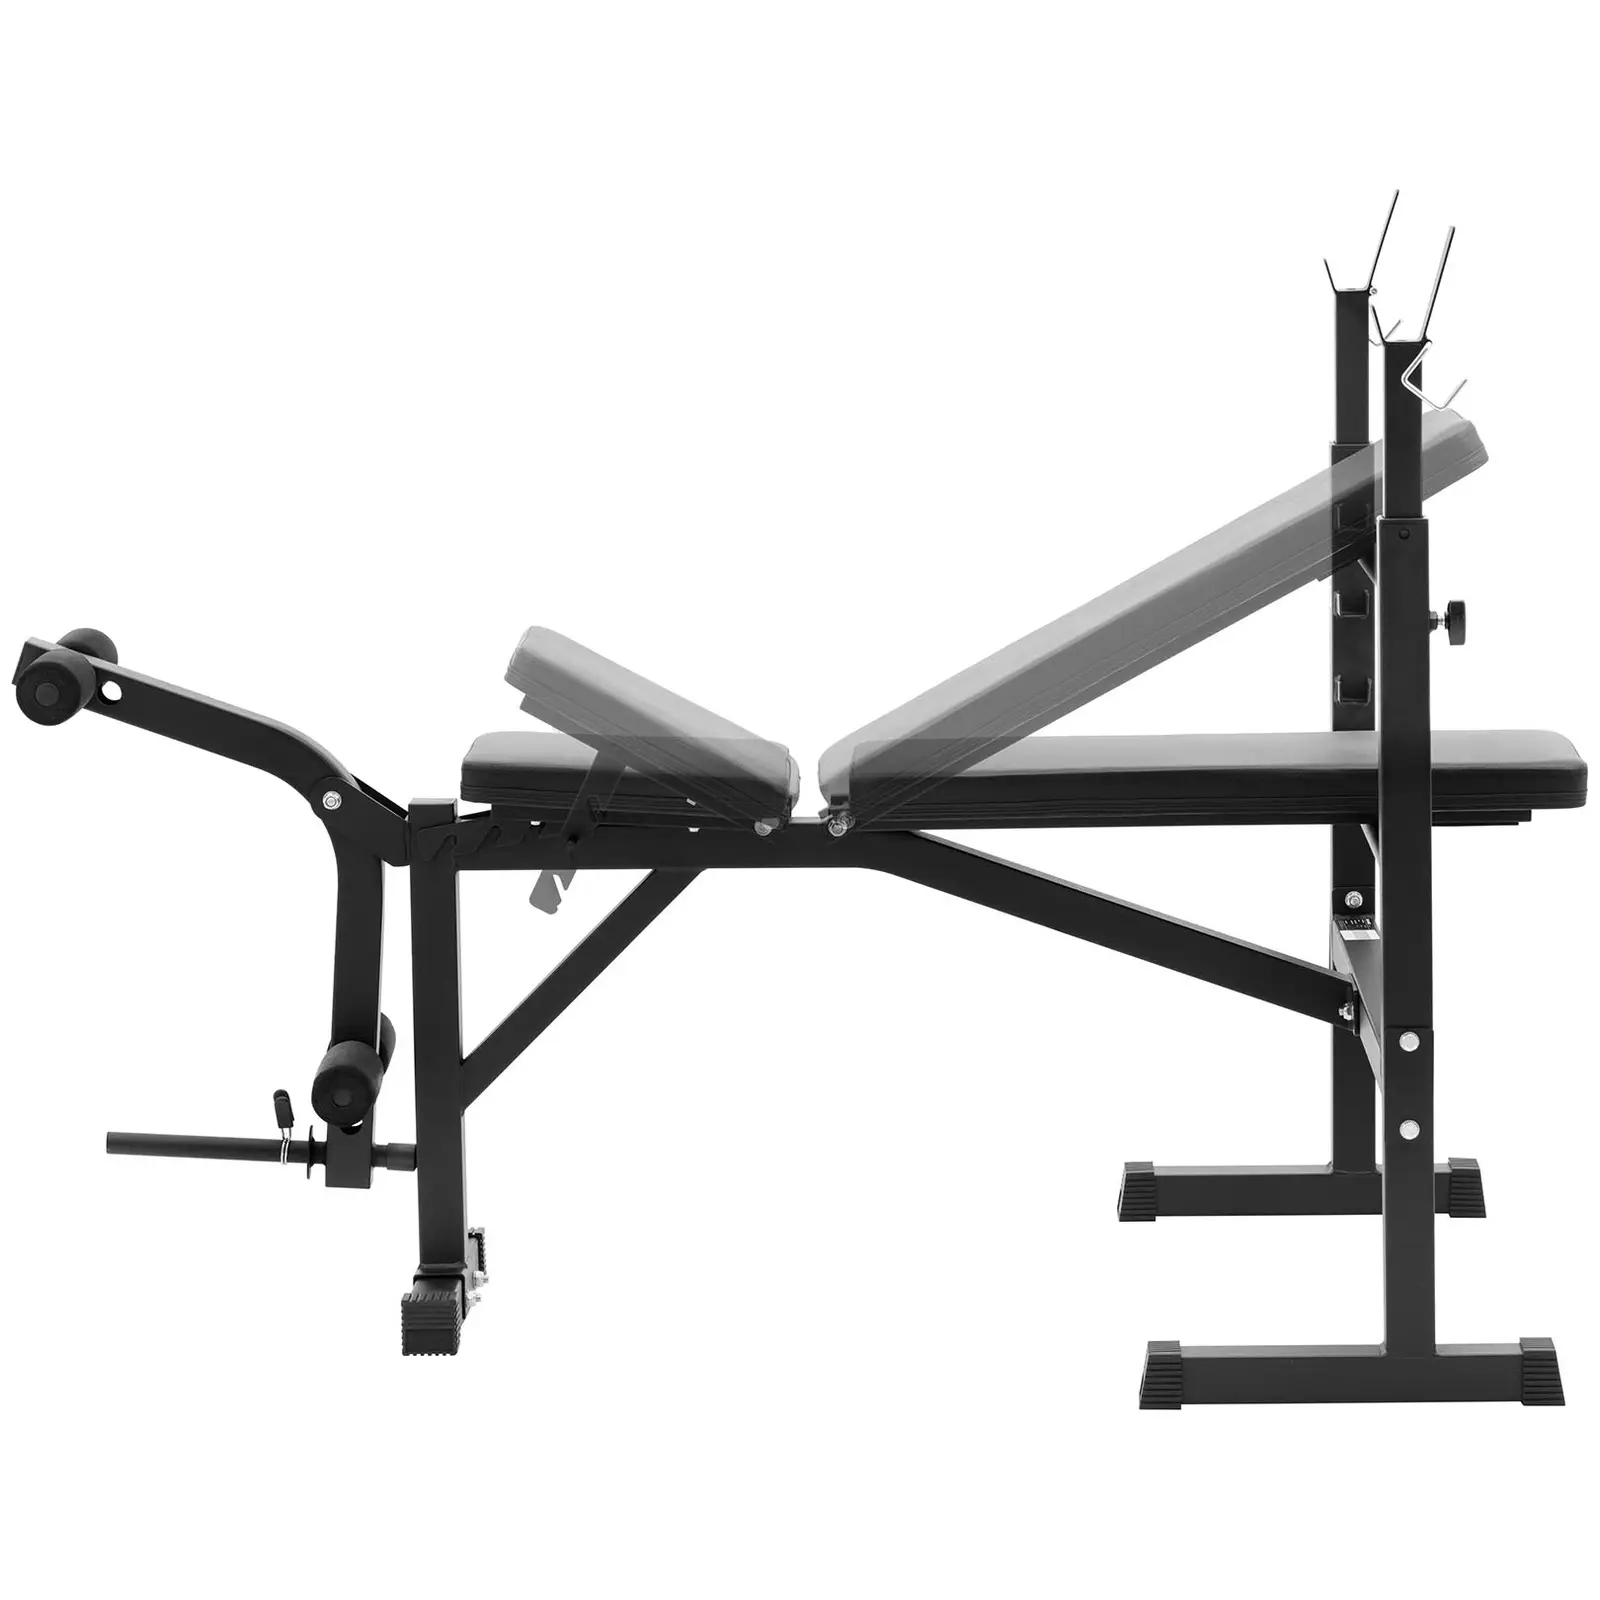 Banco de musculación multifuncional - carga máx. de 100 kg - ajustable - inclinable 180 - 152°